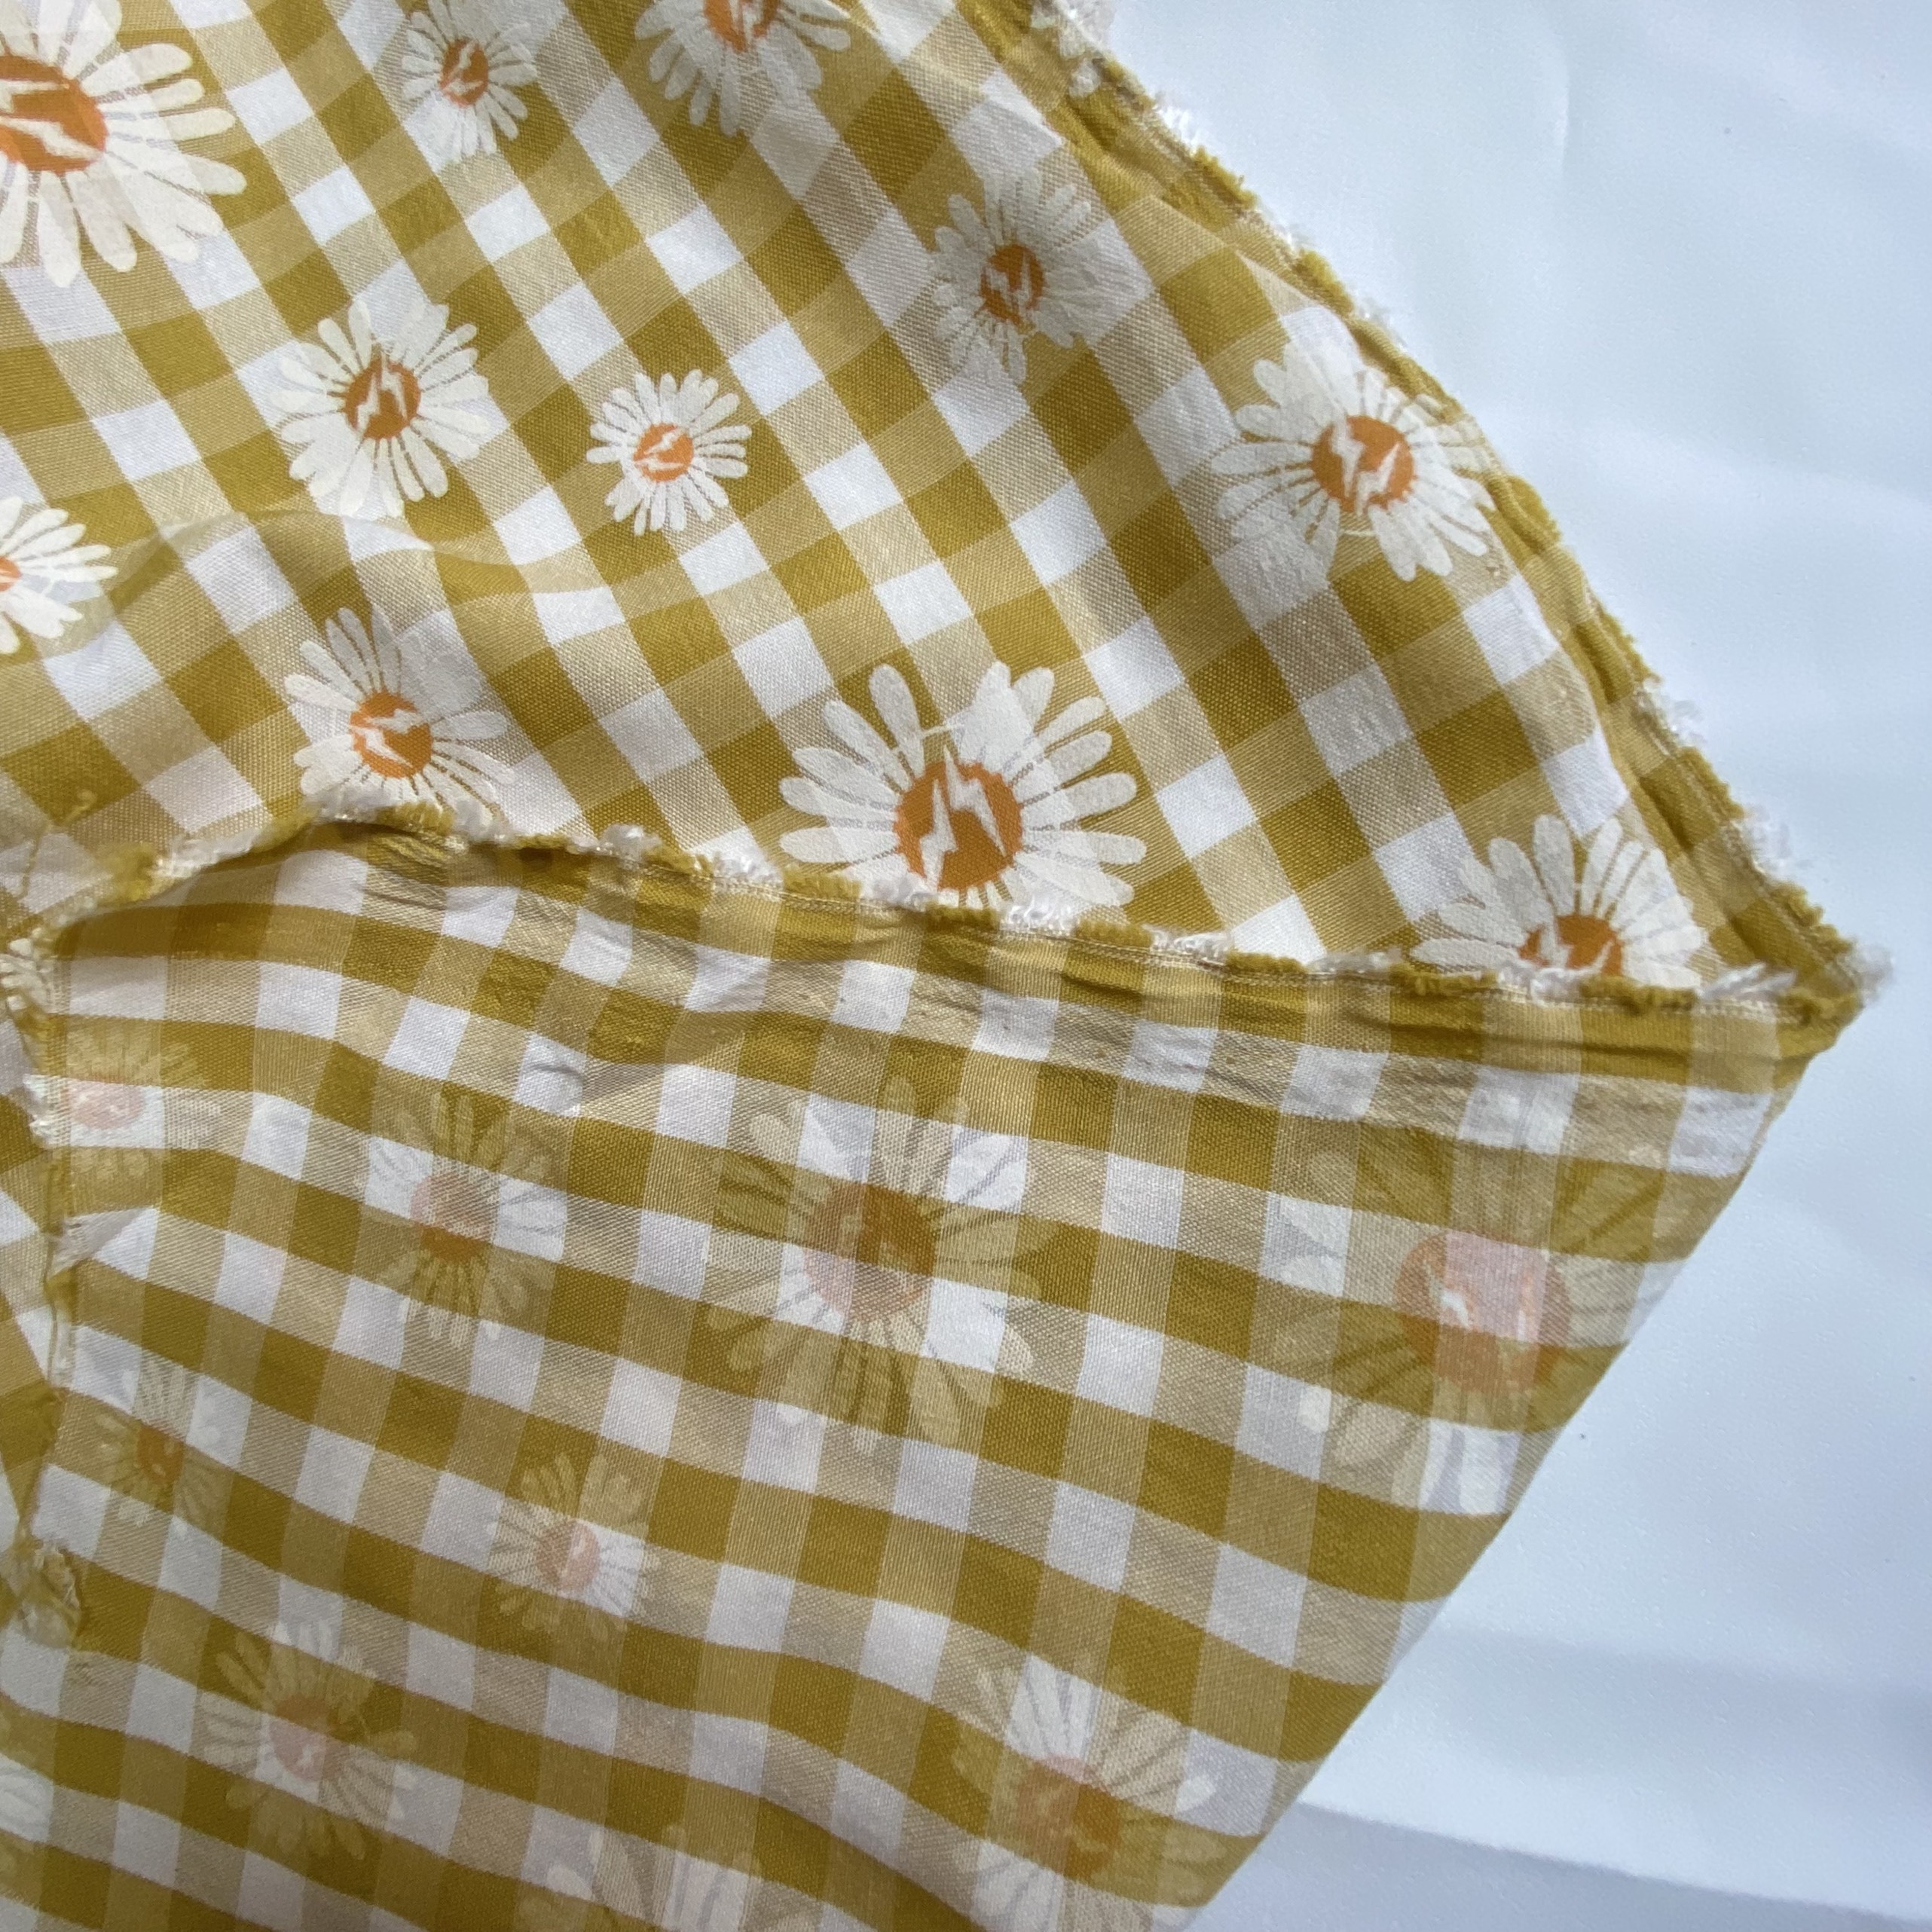 Vải Thô Cotton Pha Vàng Hoa Cúc Sơn Khổ 1m46 - Không Co Giãn - May Đầm, Áo Kiểu, Đồ Bộ, Đồ Trẻ Em